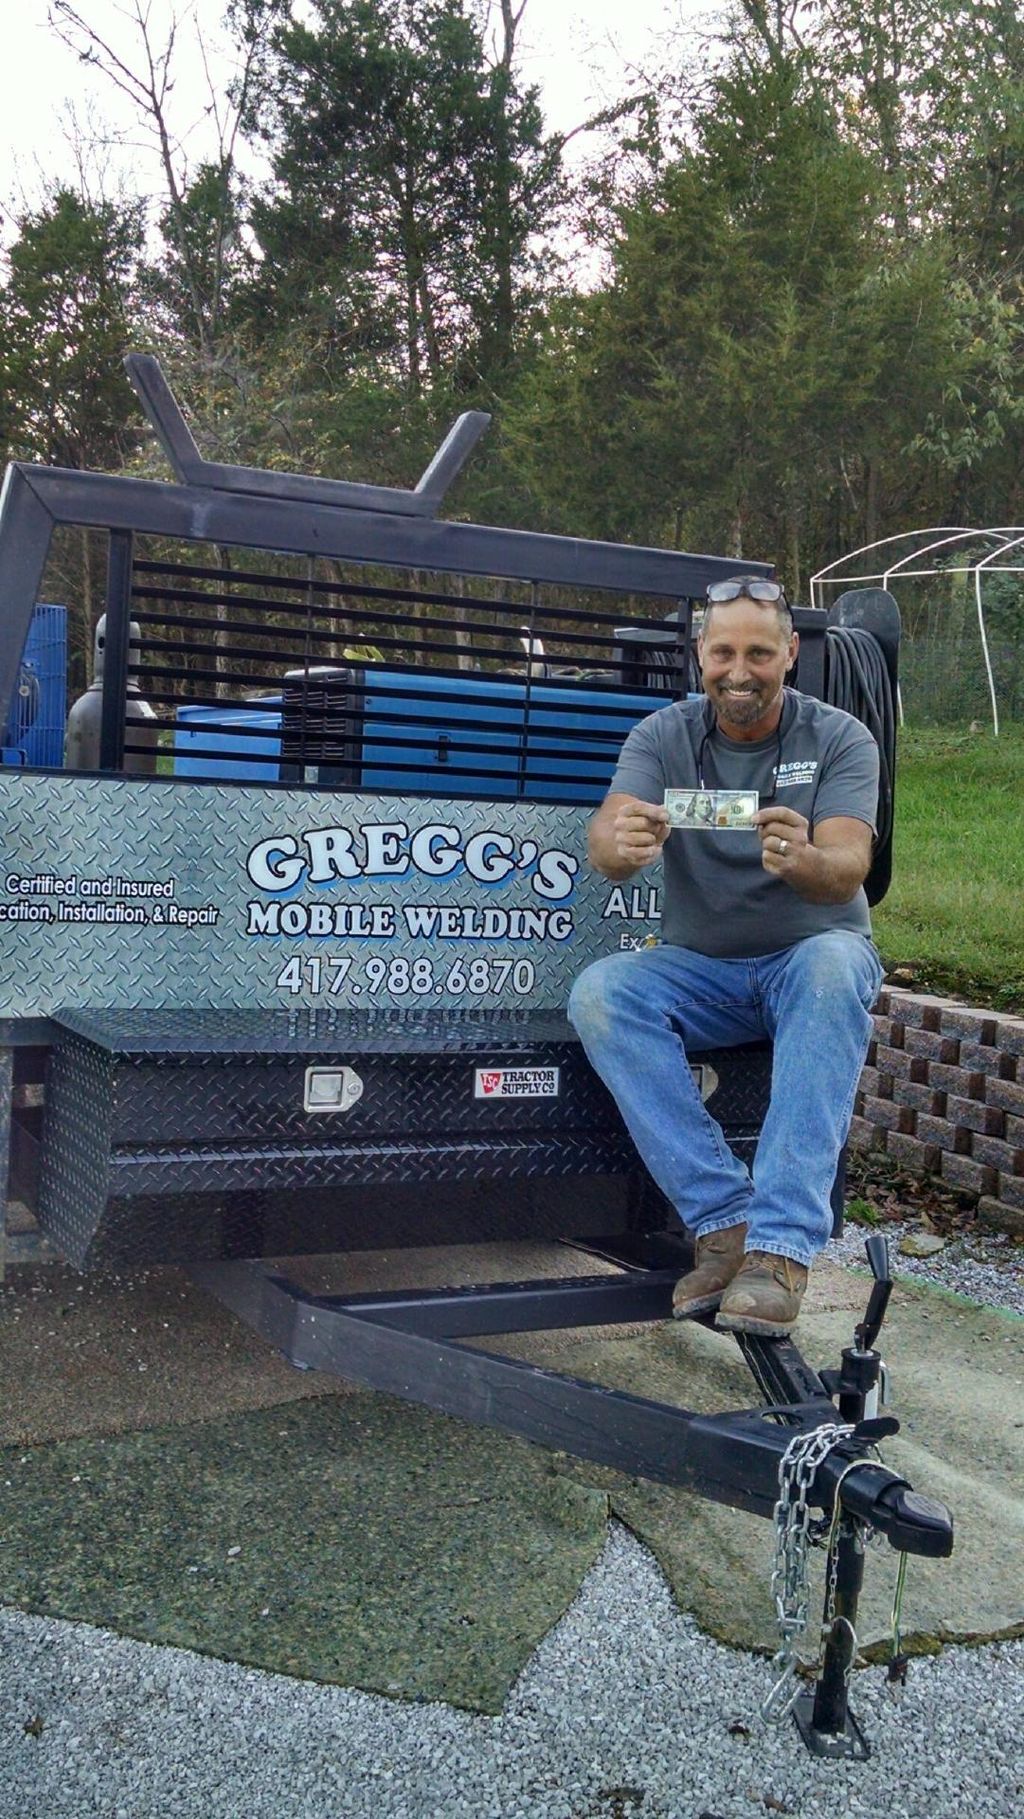 Gregg's mobile welding